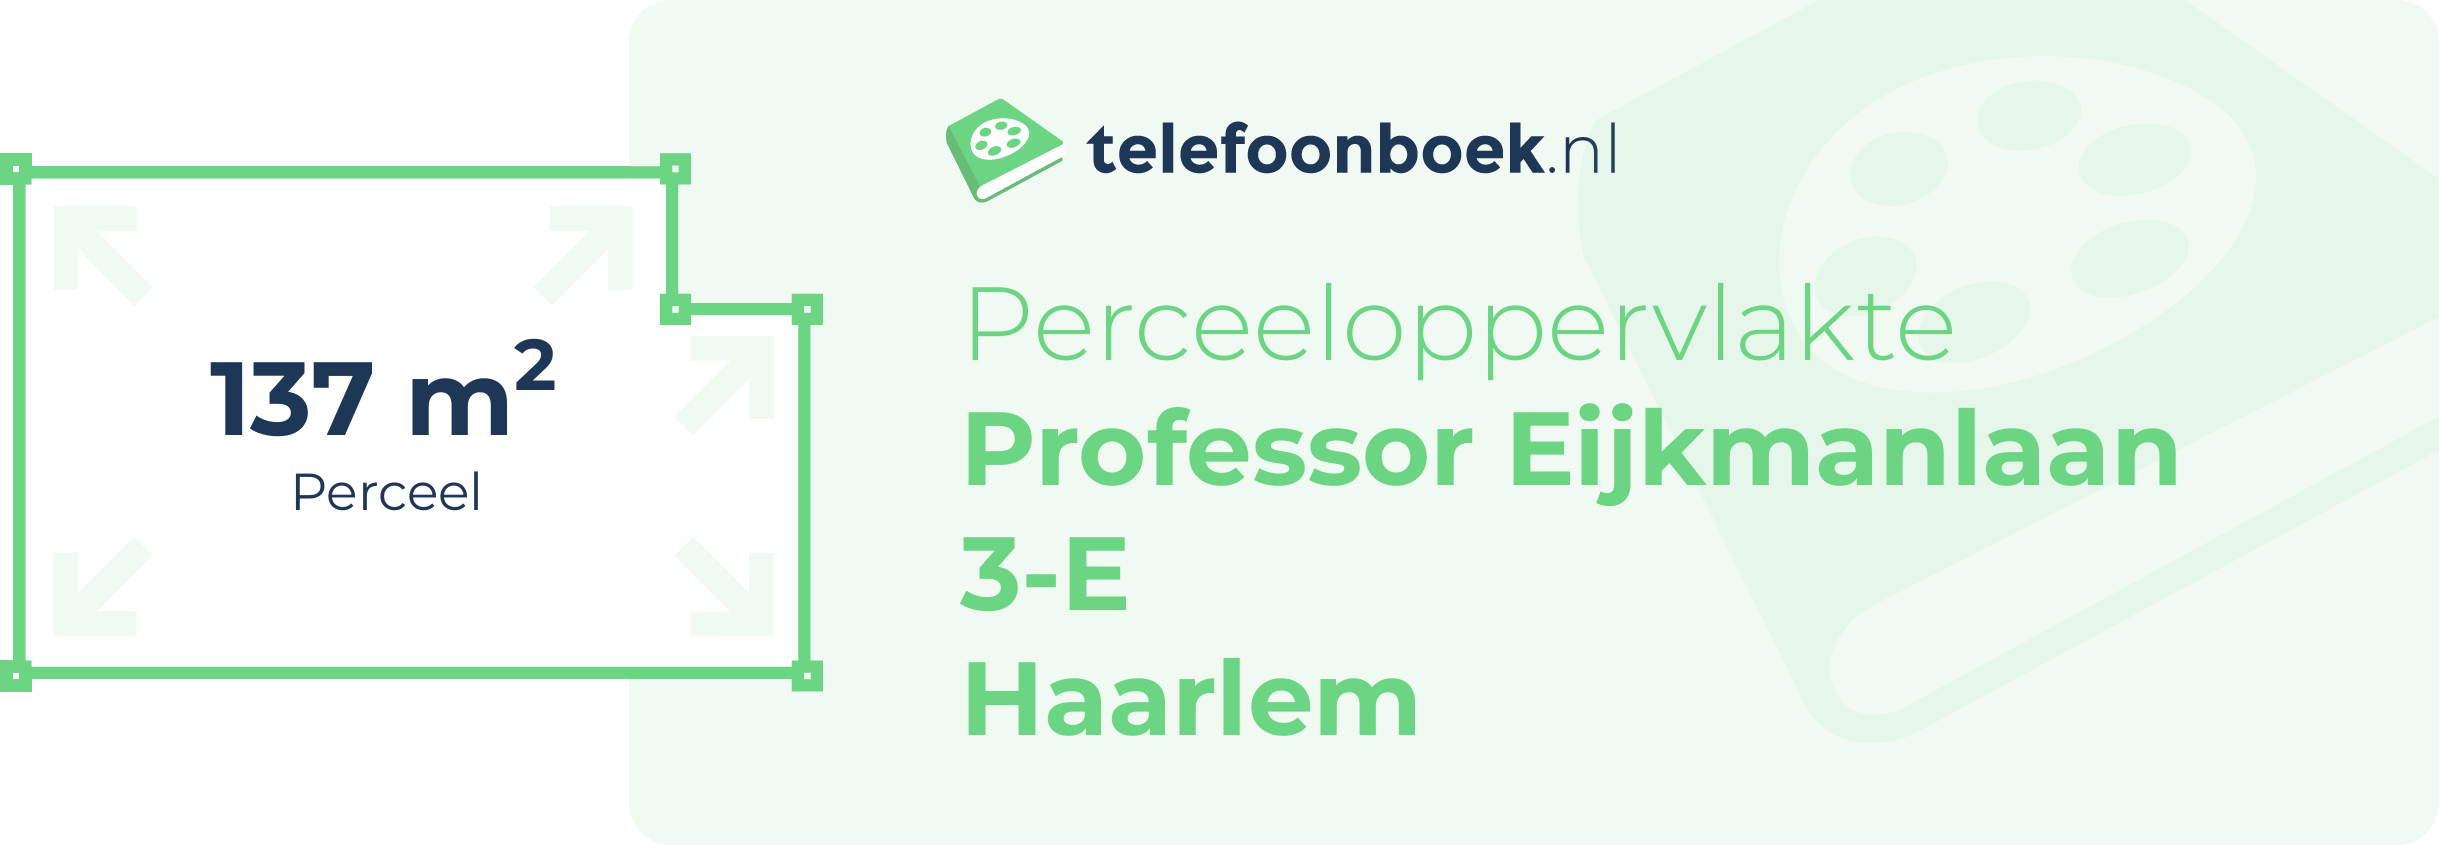 Perceeloppervlakte Professor Eijkmanlaan 3-E Haarlem